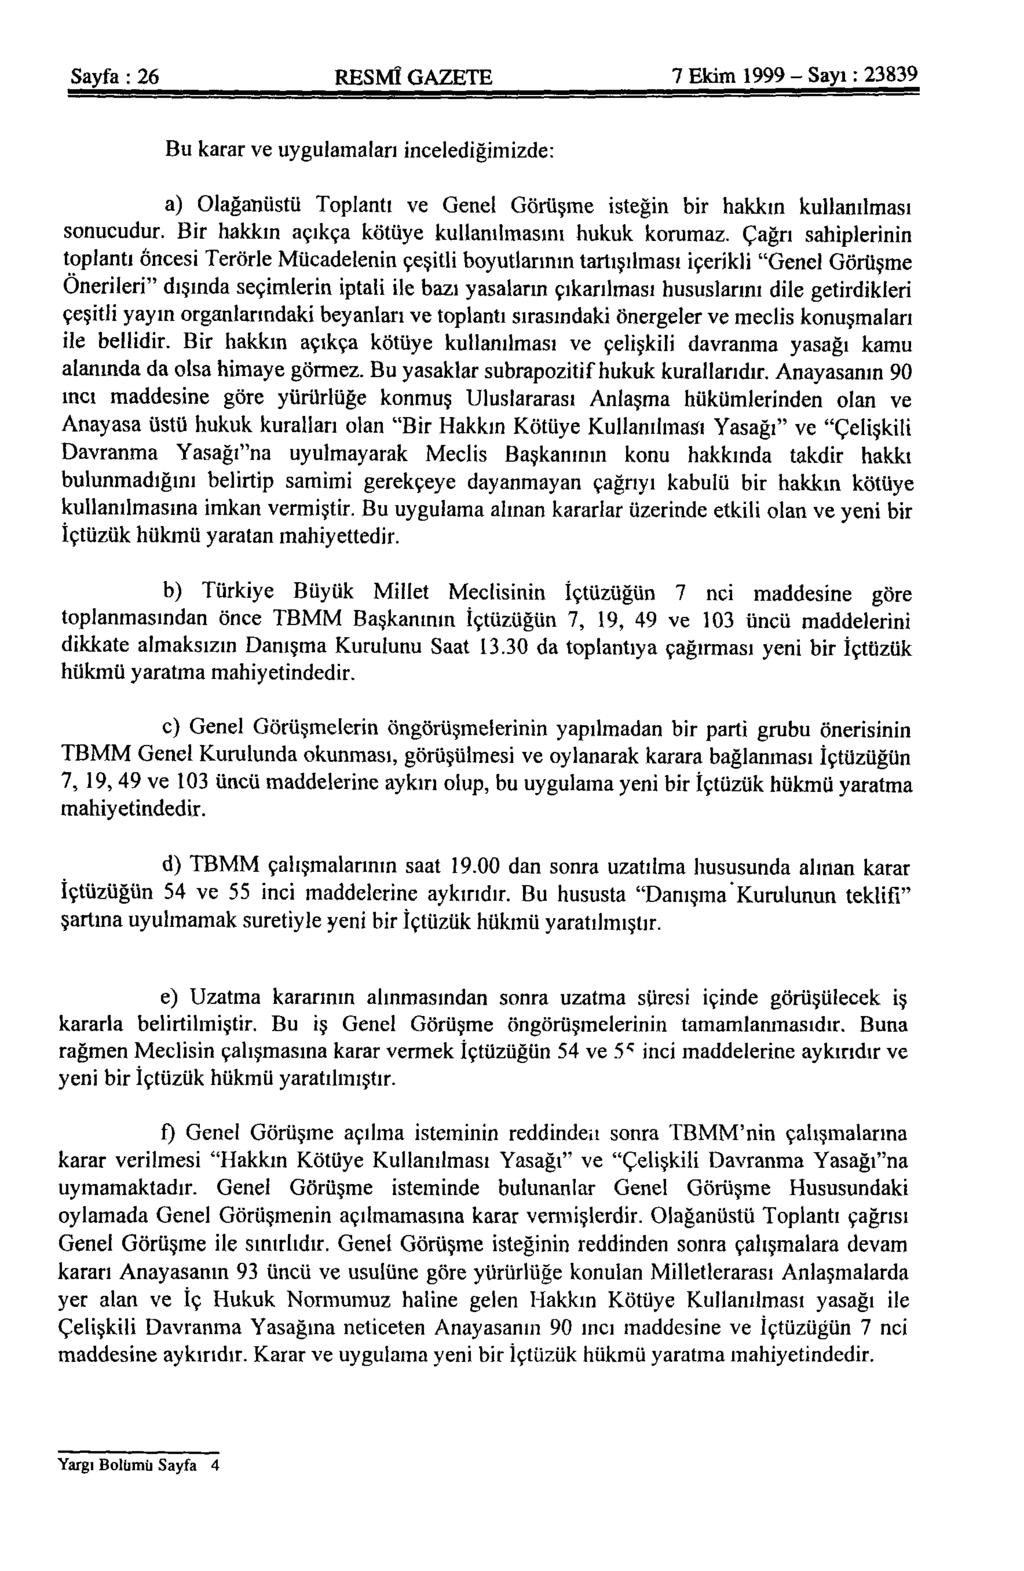 Sayfa : 26 RESMÎ GAZETE 7 Ekim 1999 - Sayı: 23839 Bu karar ve uygulamaları incelediğimizde: a) Olağanüstü Toplantı ve Genel Görüşme isteğin bir hakkın kullanılması sonucudur.